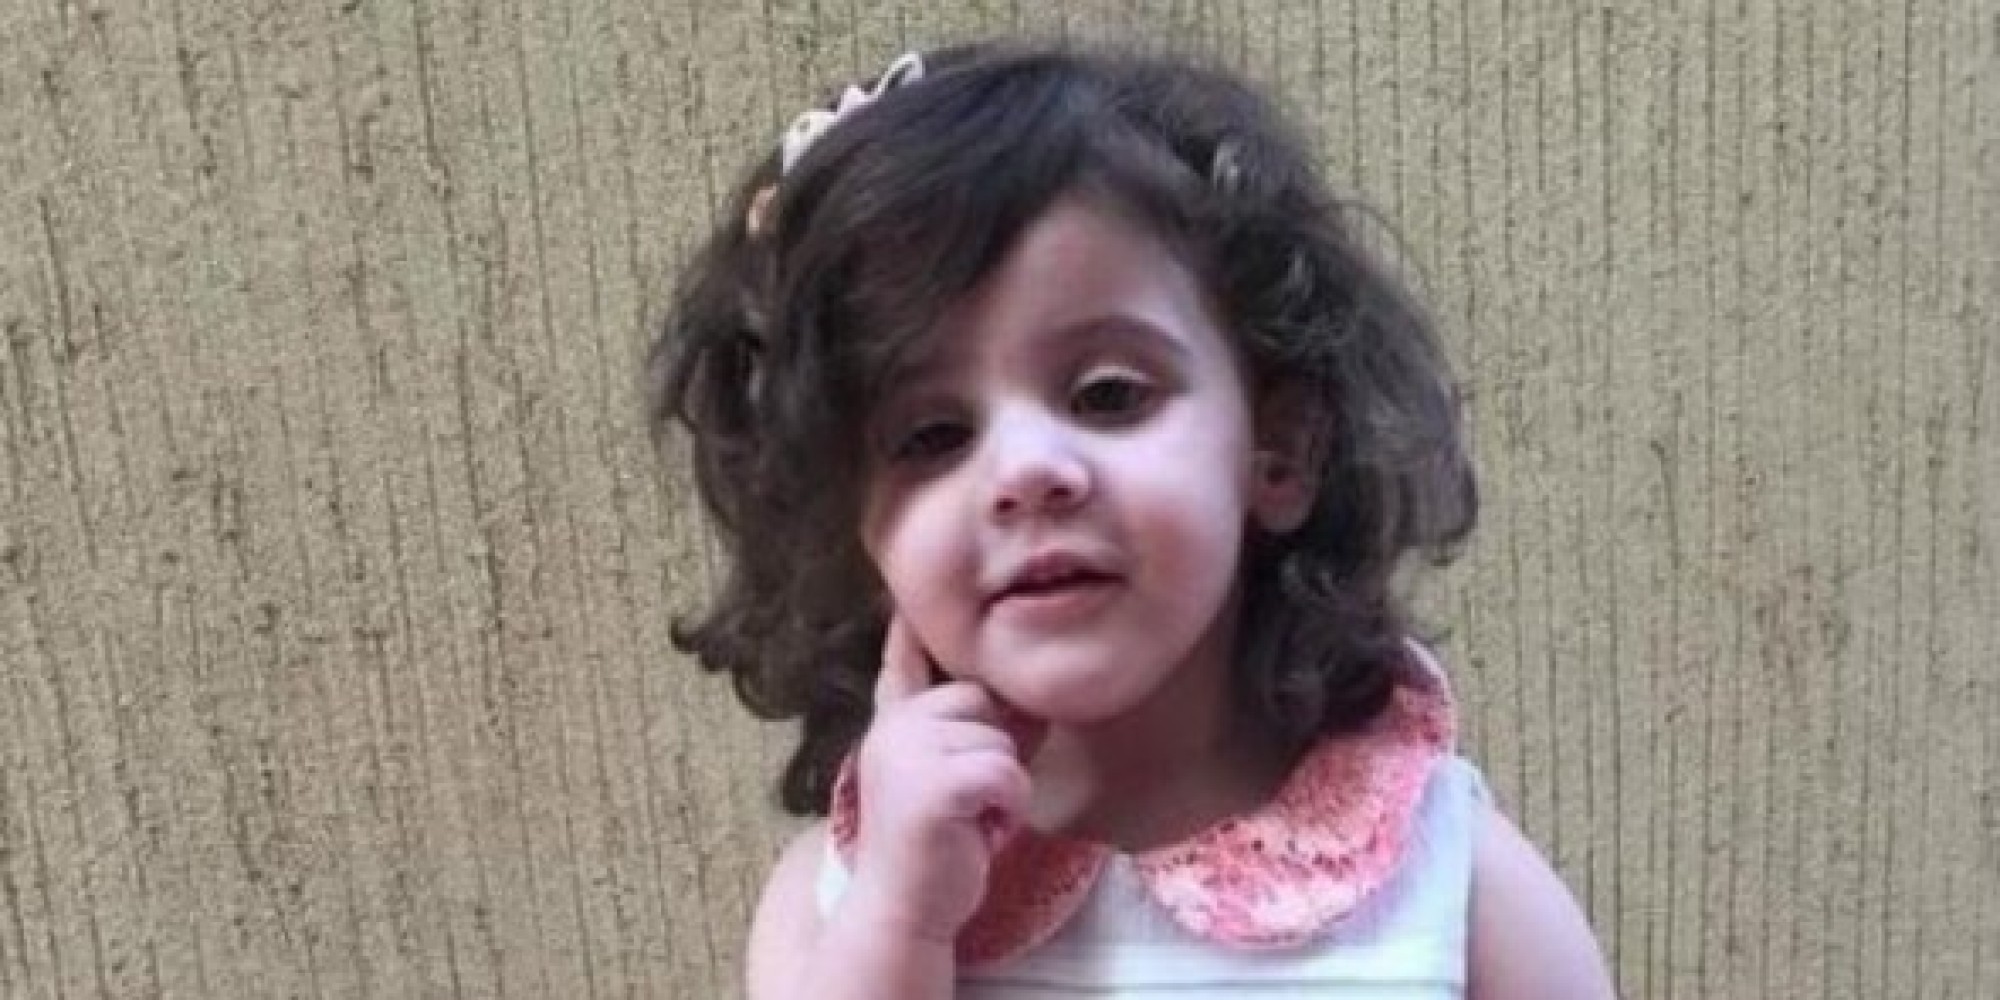 6 أيام والطفلة جوري الخالدي لا تزال “مُختطفة”: تعاطف وغضب